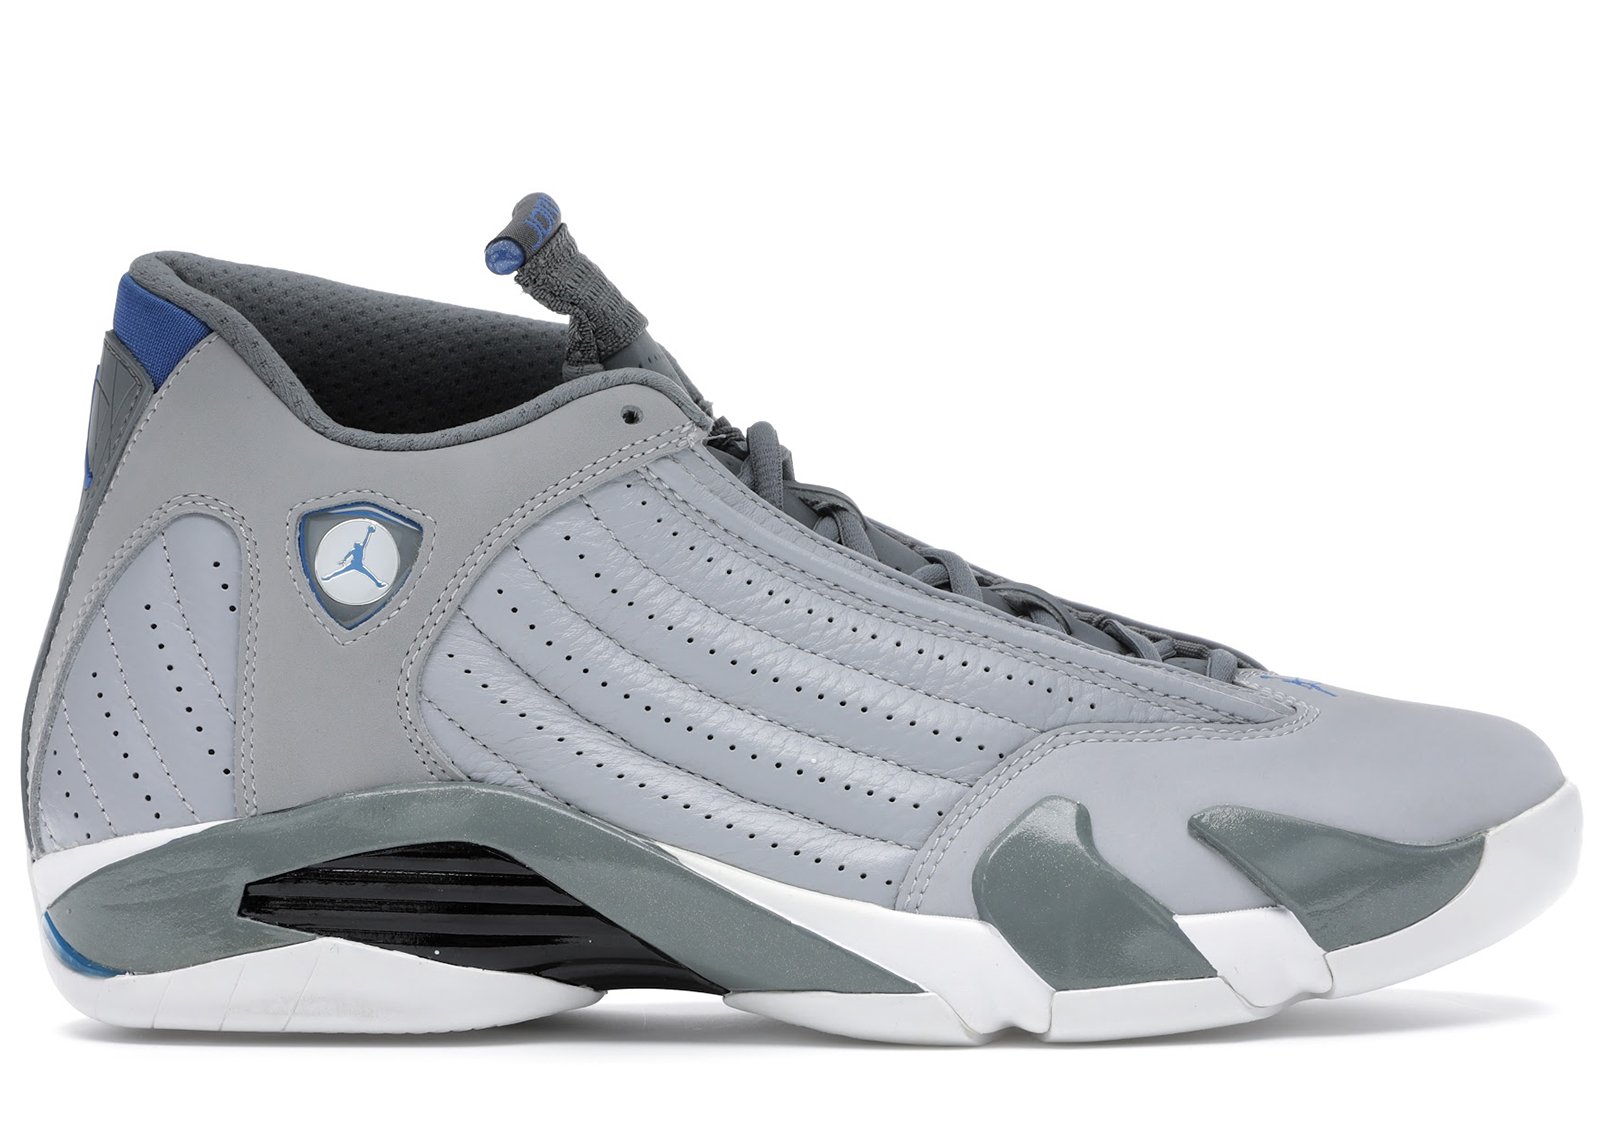 Jordan 14 Retro Wolf Grey sneakers